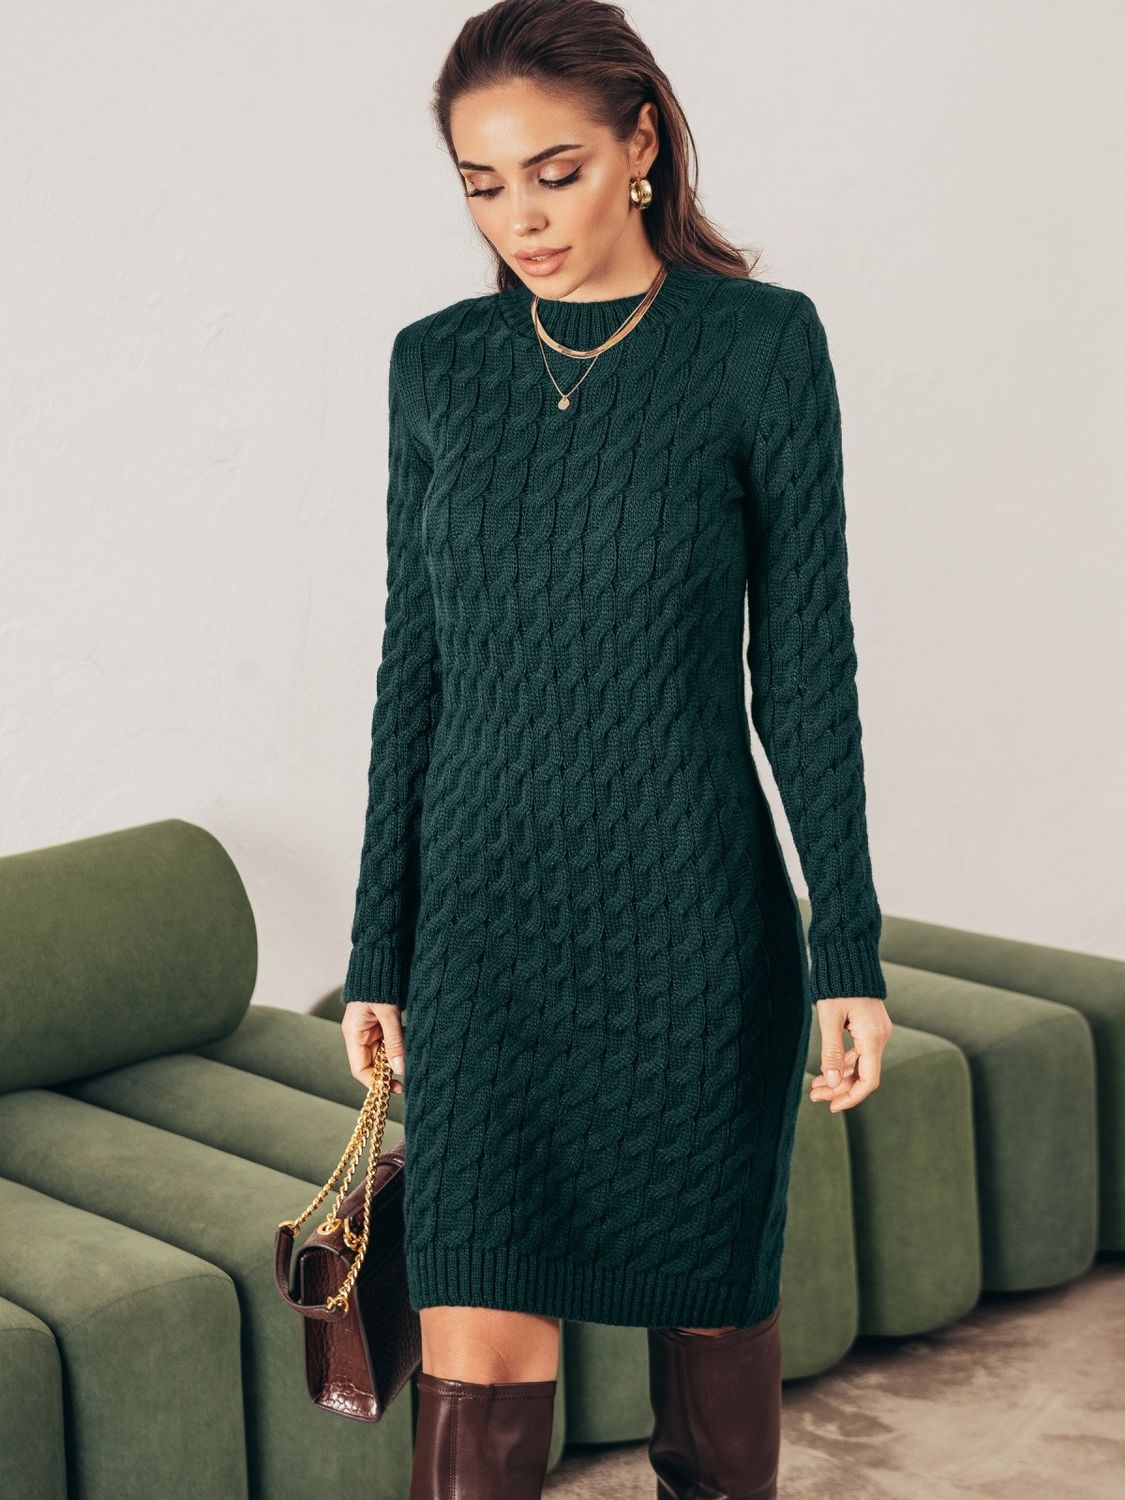 Теплое вязаное платье зеленого цвета - фото